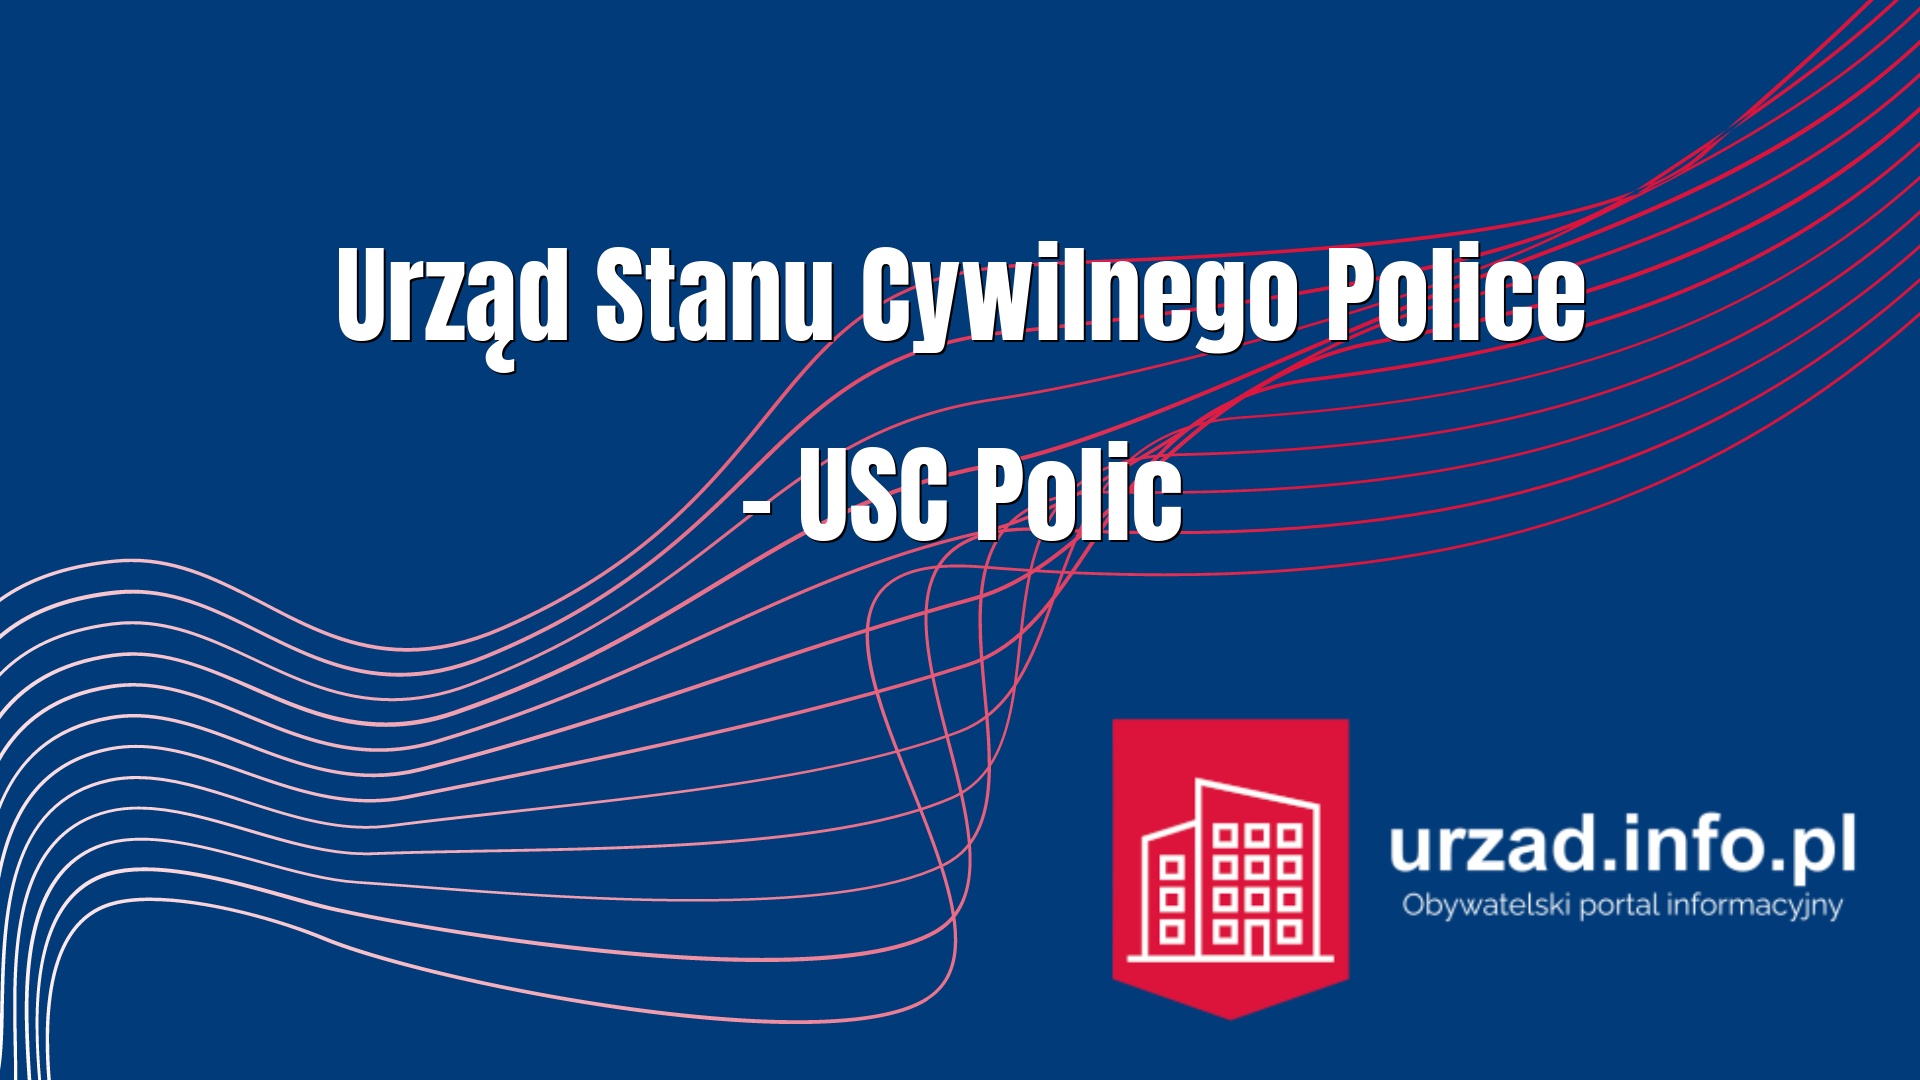 Urząd Stanu Cywilnego Police – USC Polic